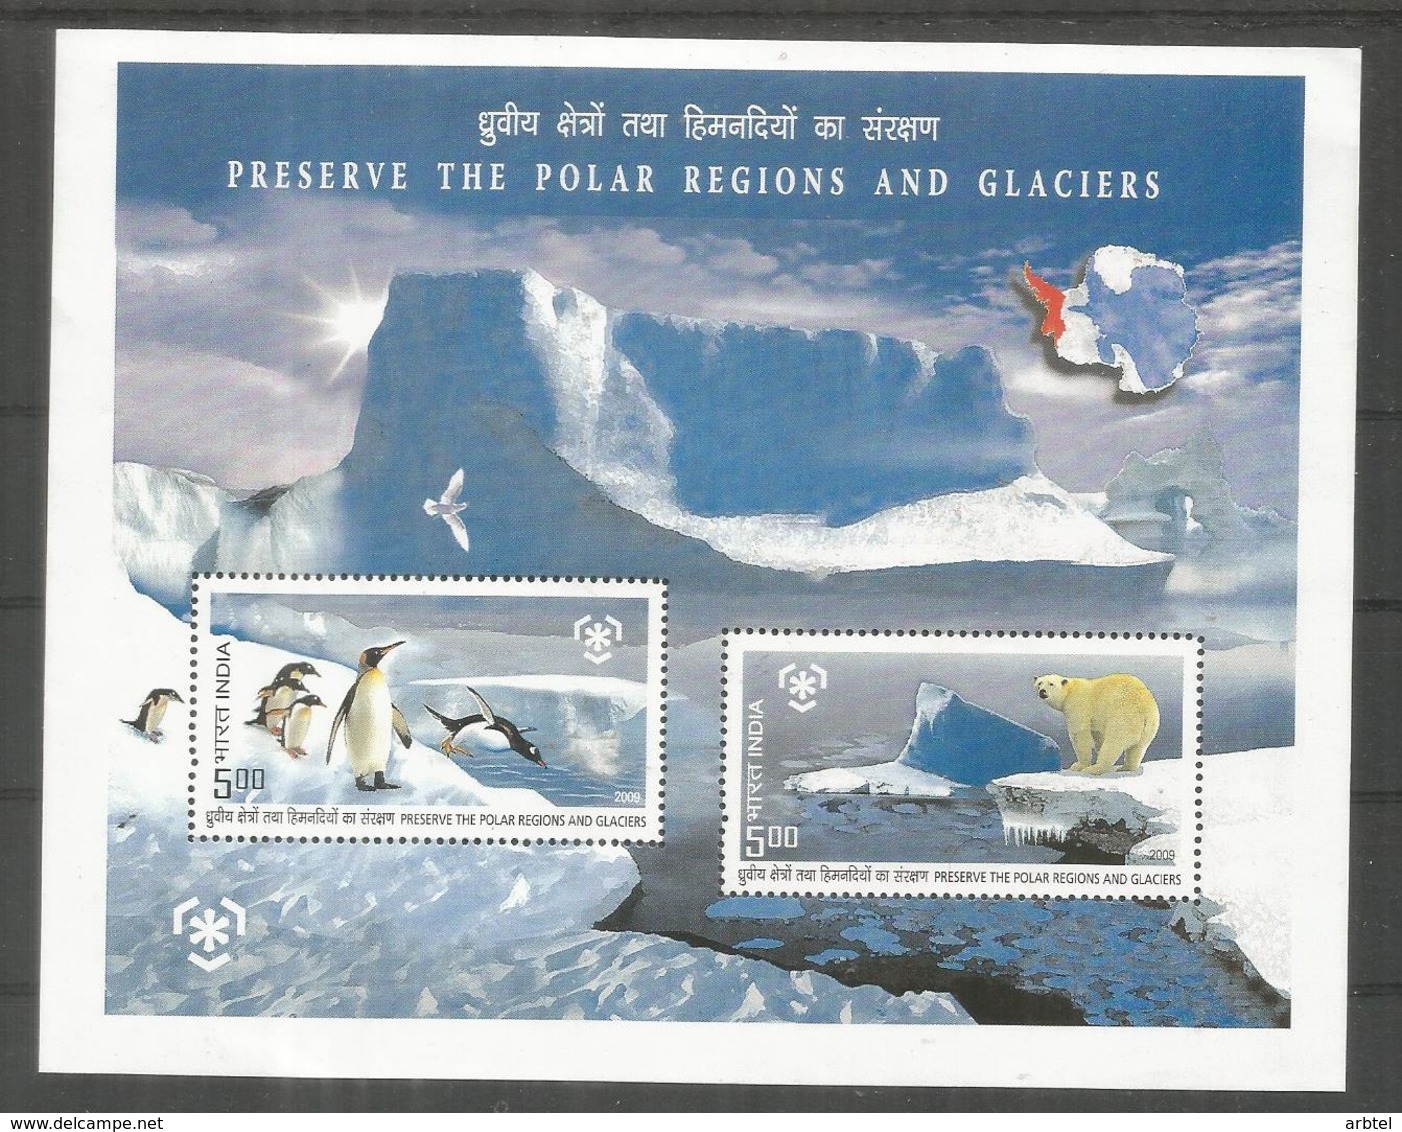 INDIA PRESERVE POLAR REGIONS ARCTIC ANTARCTIC ARTICO ANTARTIDA OSO BEAR PENGUIN - Preservar Las Regiones Polares Y Glaciares